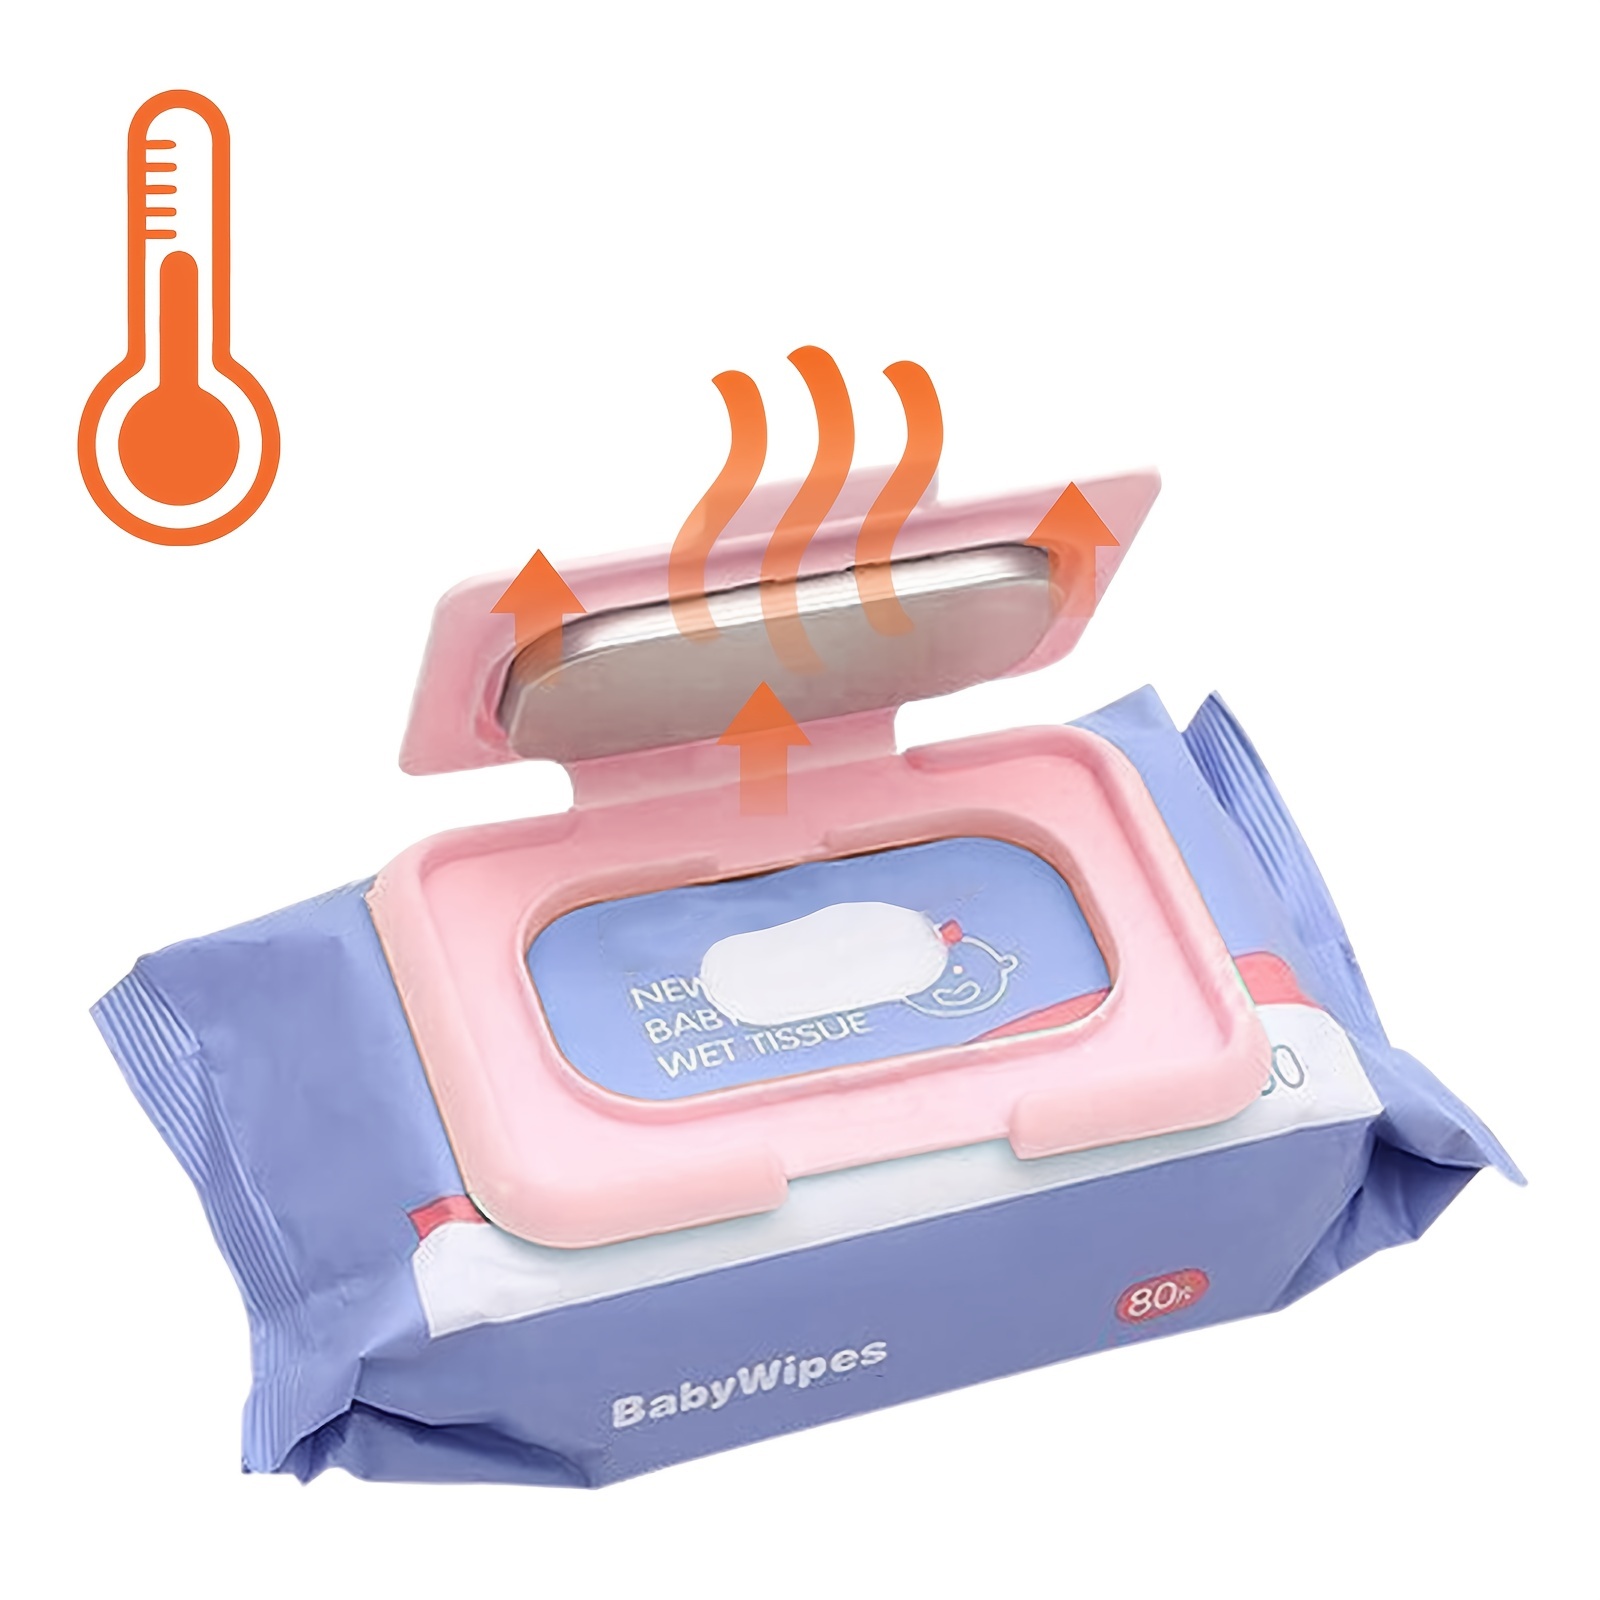 Calentador de toallitas para bebés, calentador de toallitas y dispensador  de toallitas húmedas para bebés, control de temperatura inteligente y